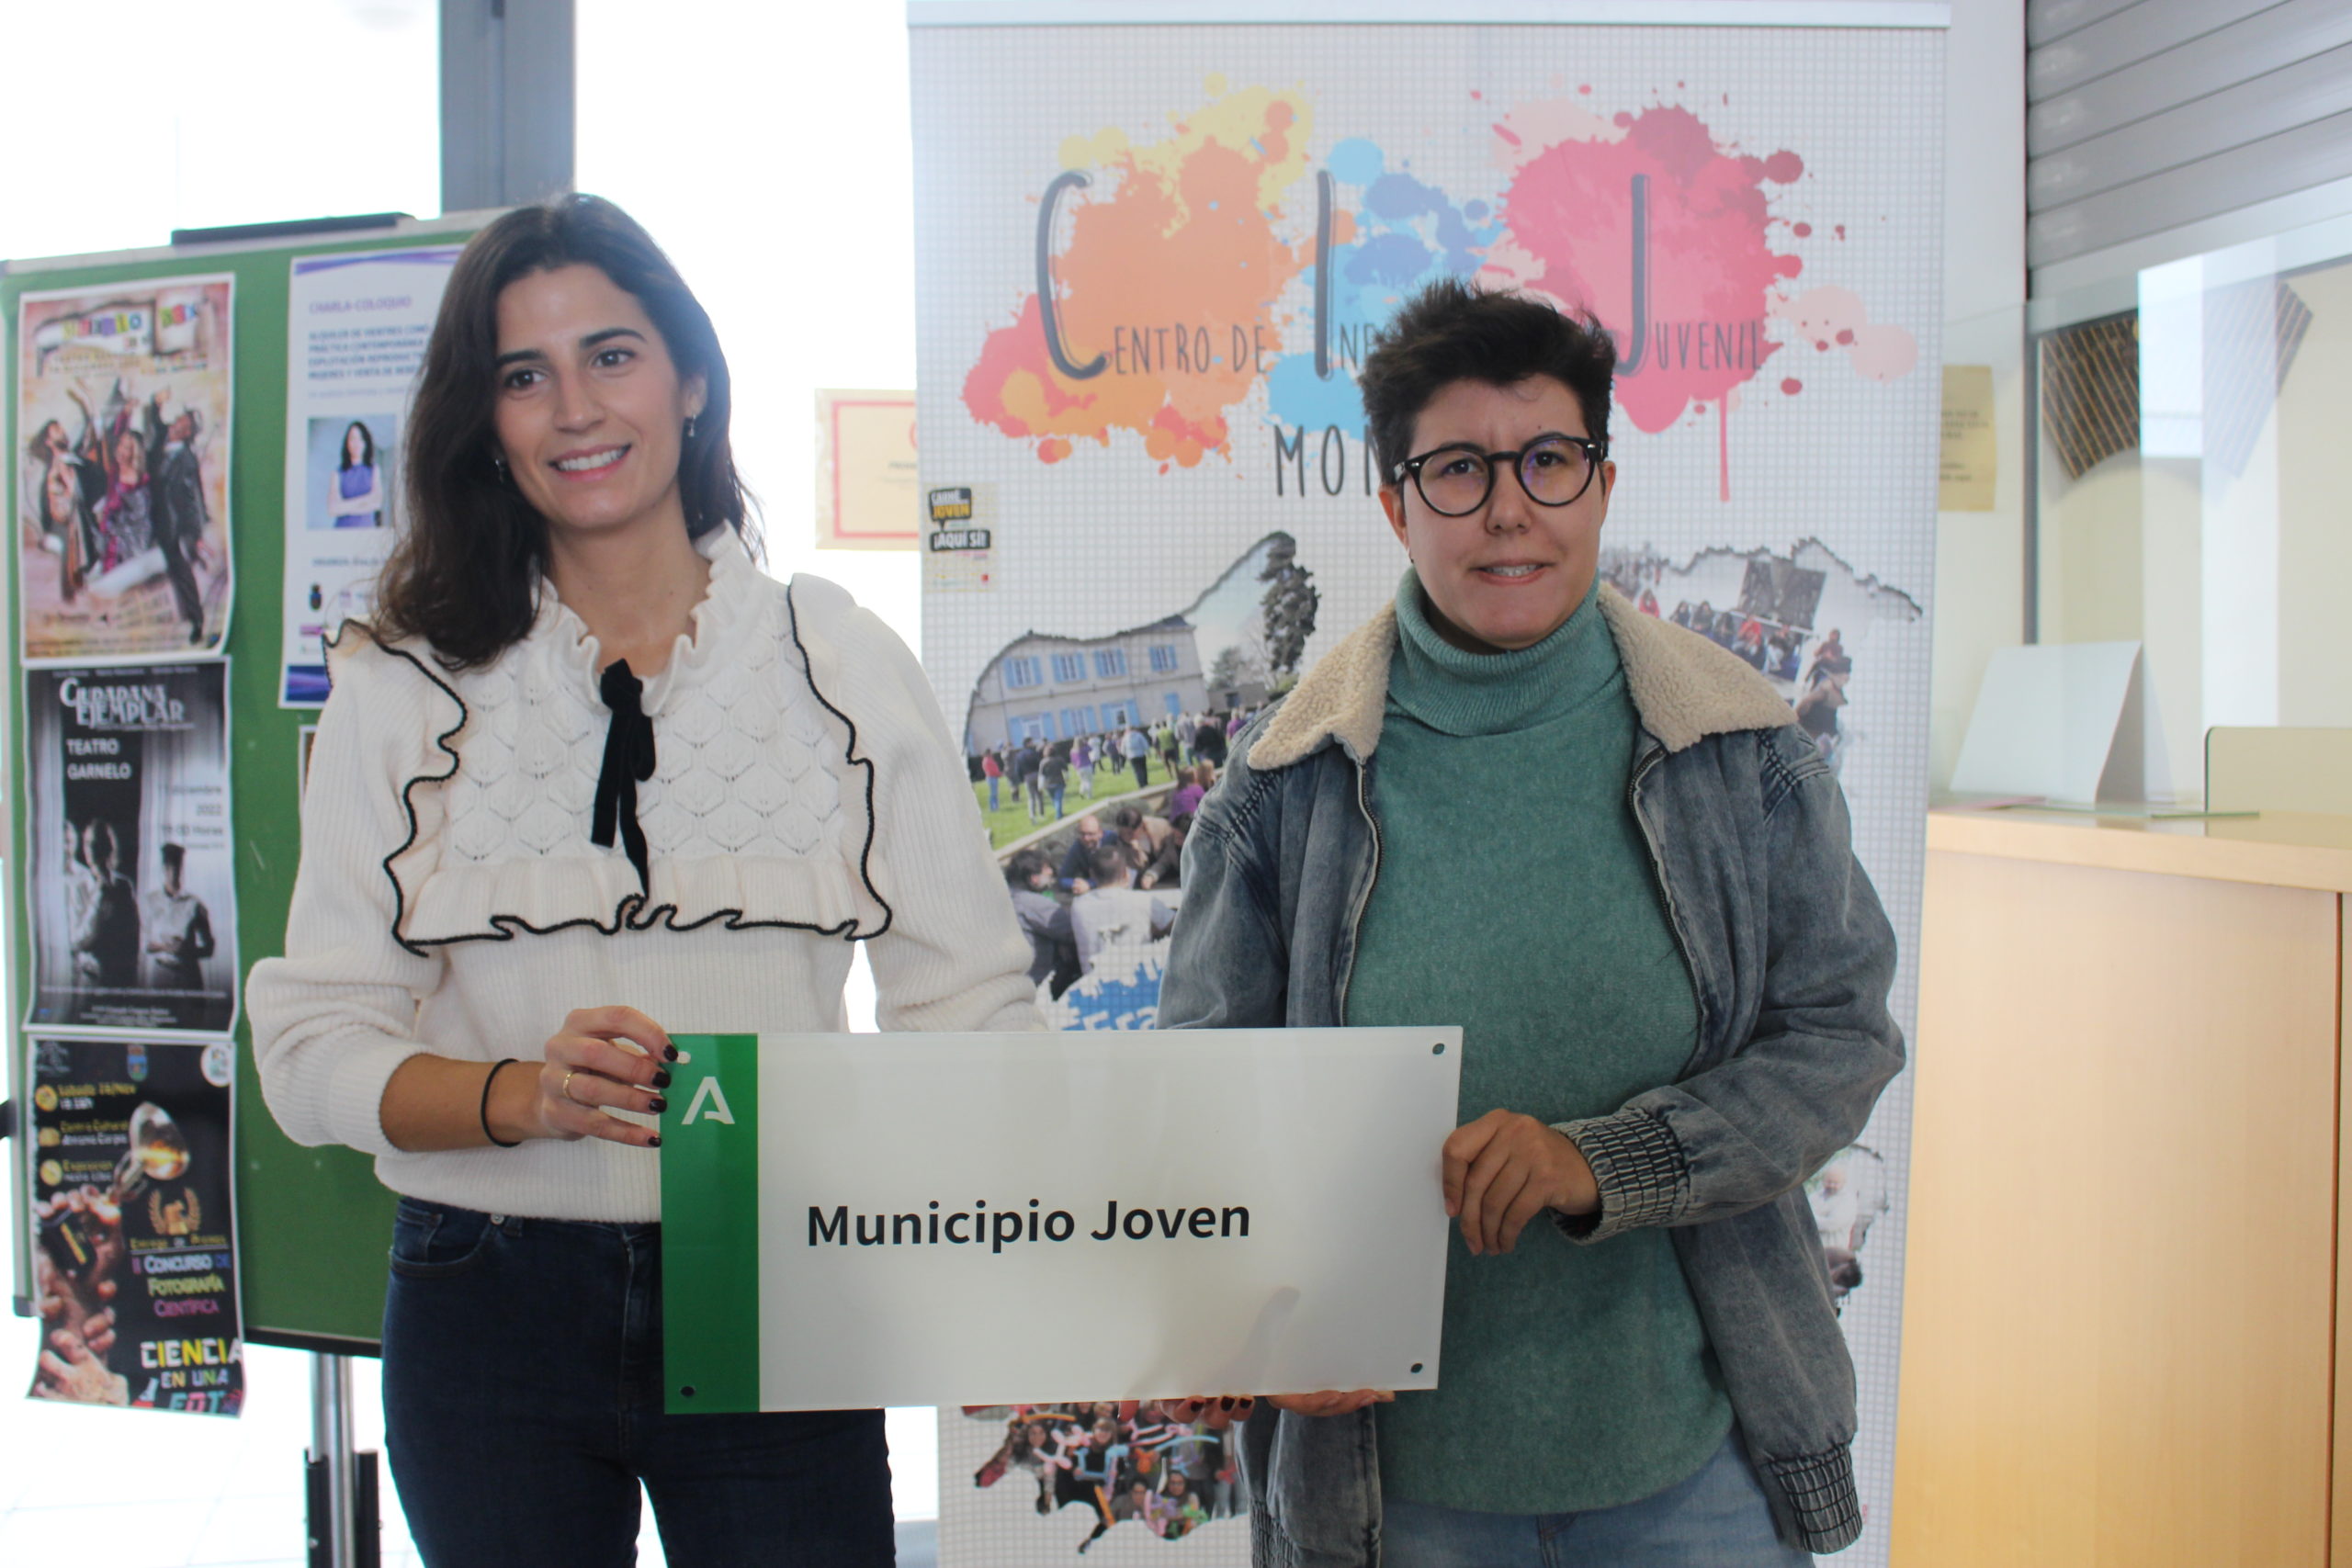 La delegada de Juventud recibe el distintivo Municipio Joven de manos de la Coordinadora del IAJ Córdoba.